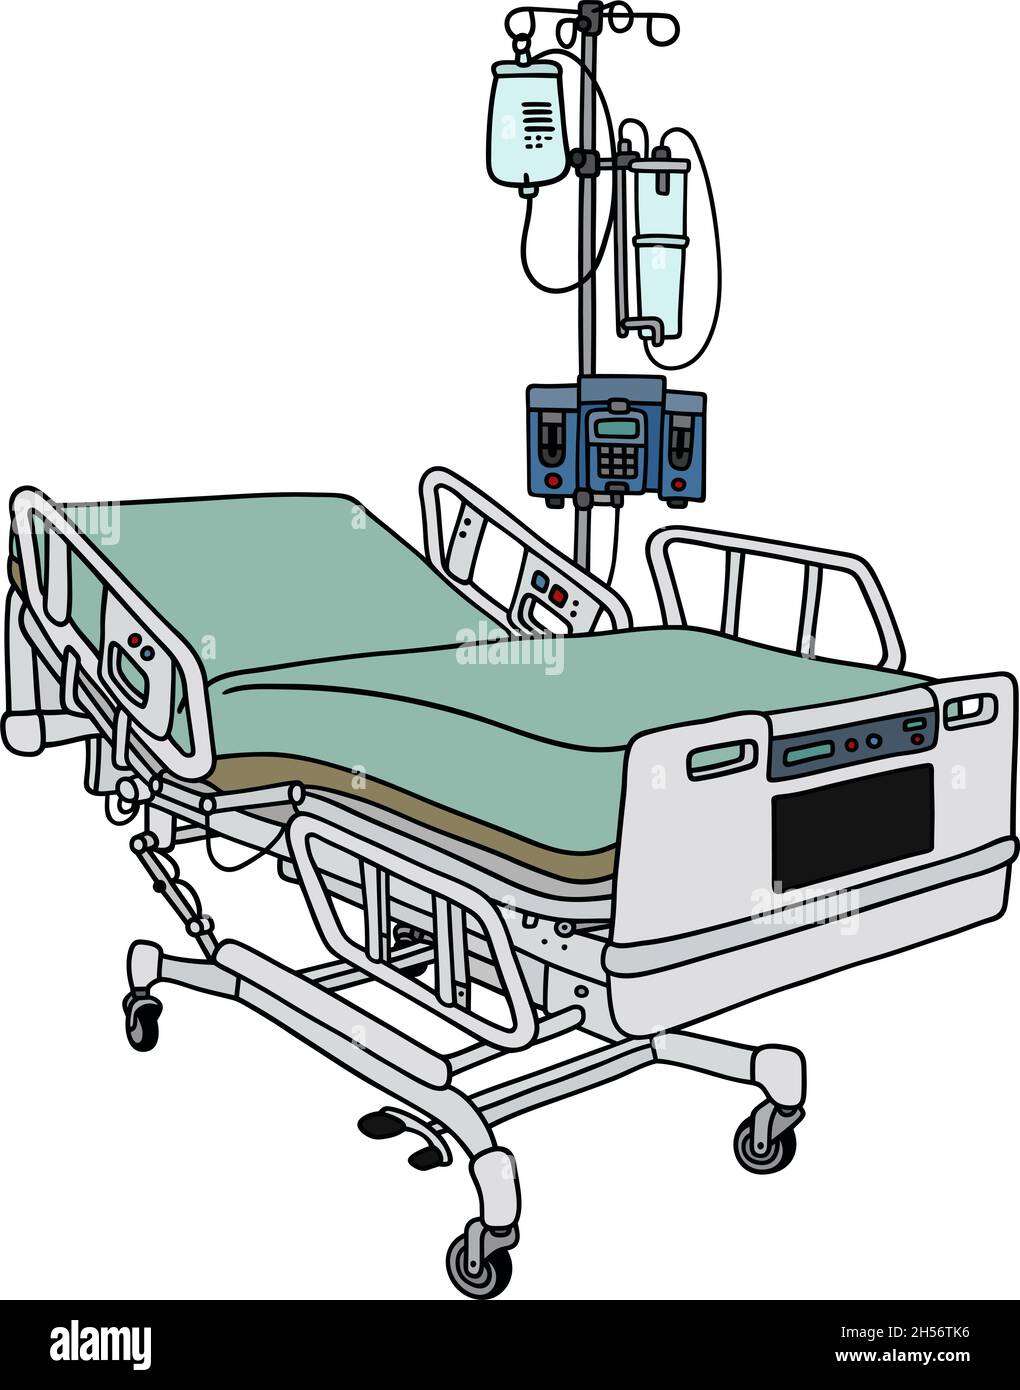 Dessin manuel d'un lit de position d'hôpital Illustration de Vecteur